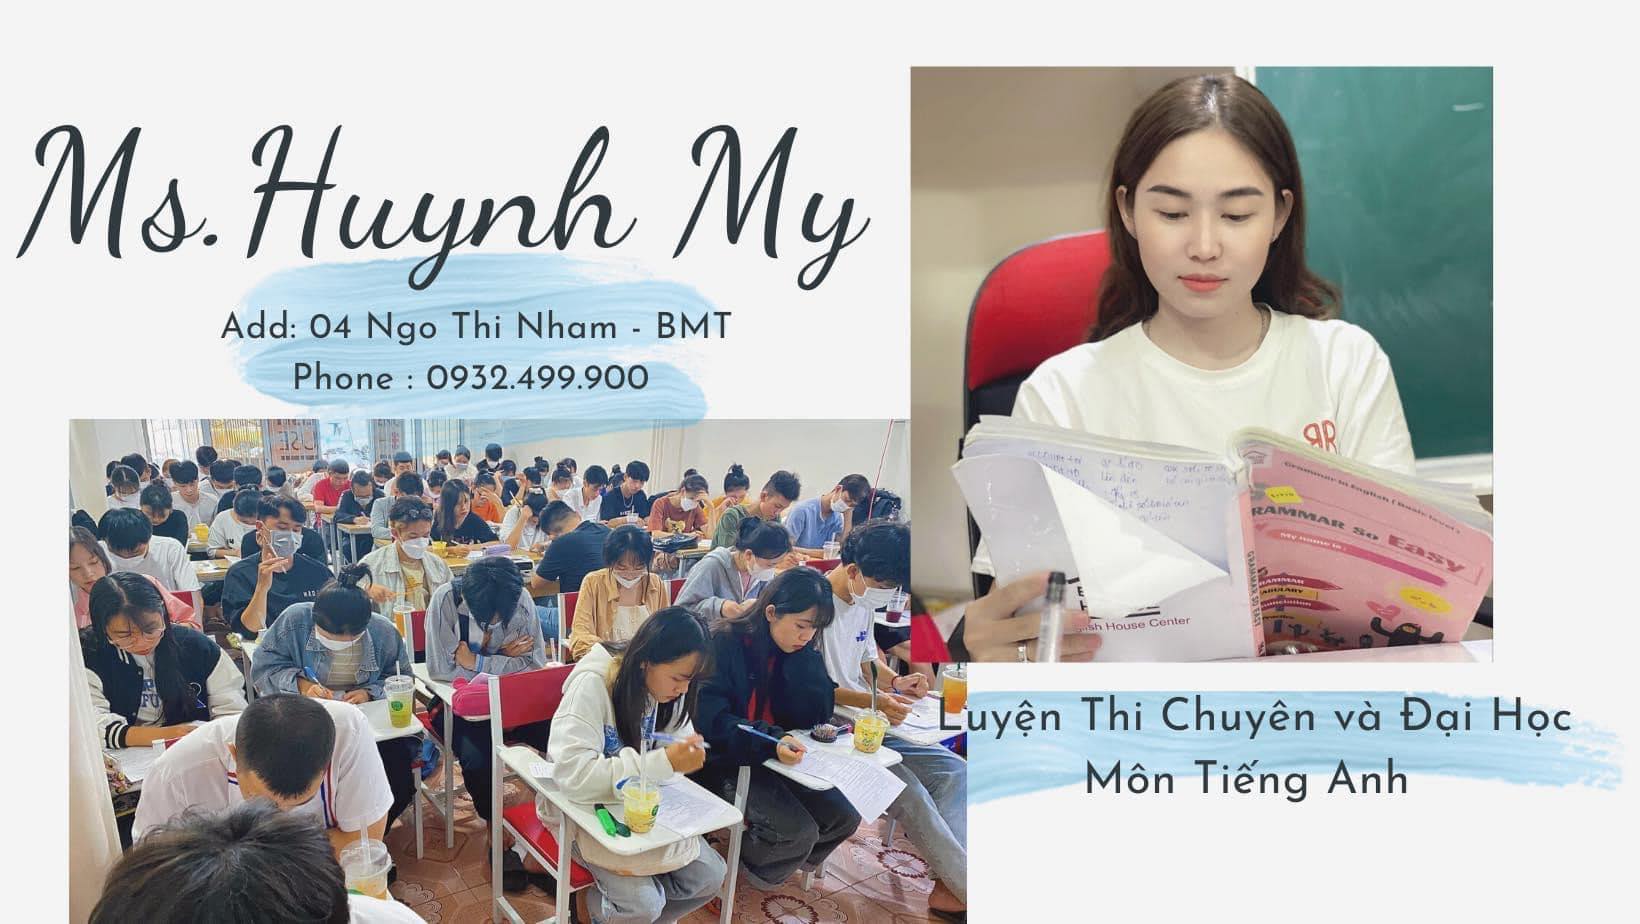 Luyện Thi Đại Học - Tiếng Anh cô Huỳnh My BMT ảnh 1